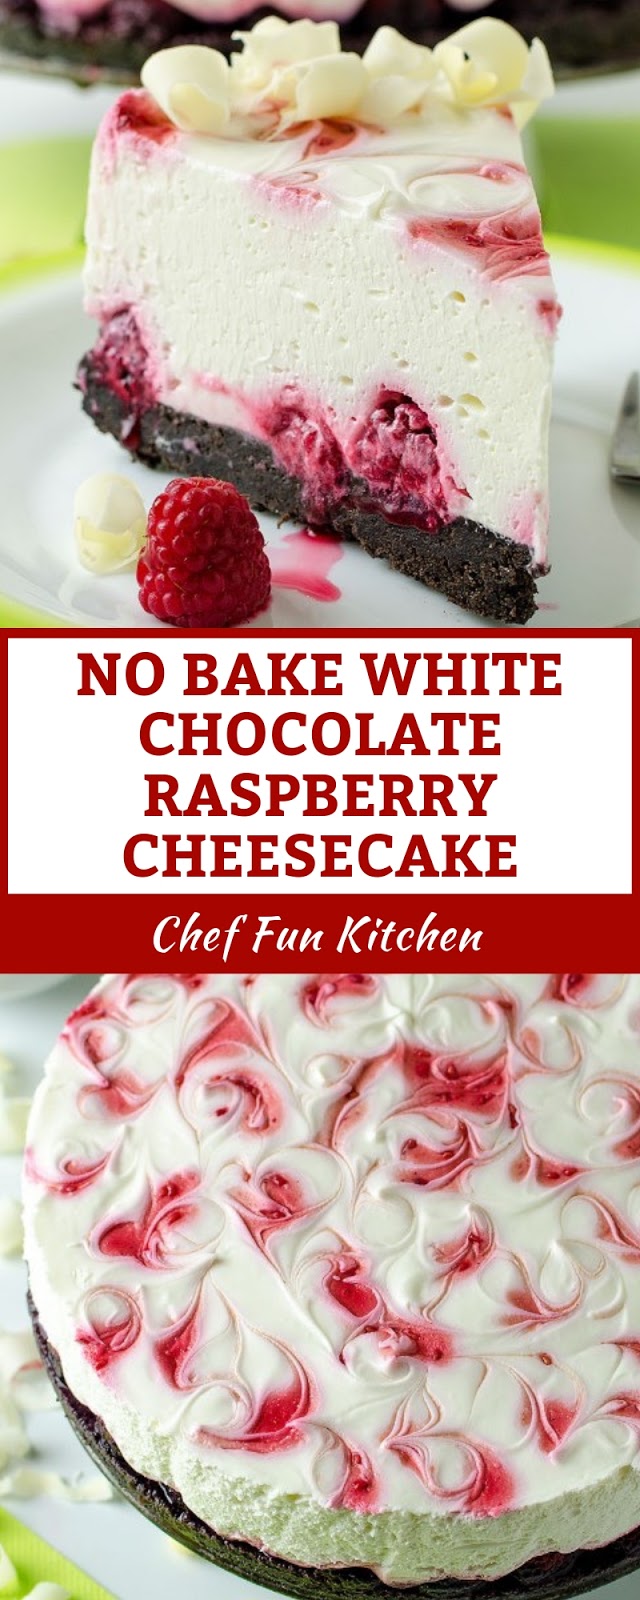 NO BAKE WHITE CHOCOLATE RASPBERRY CHEESECAKE